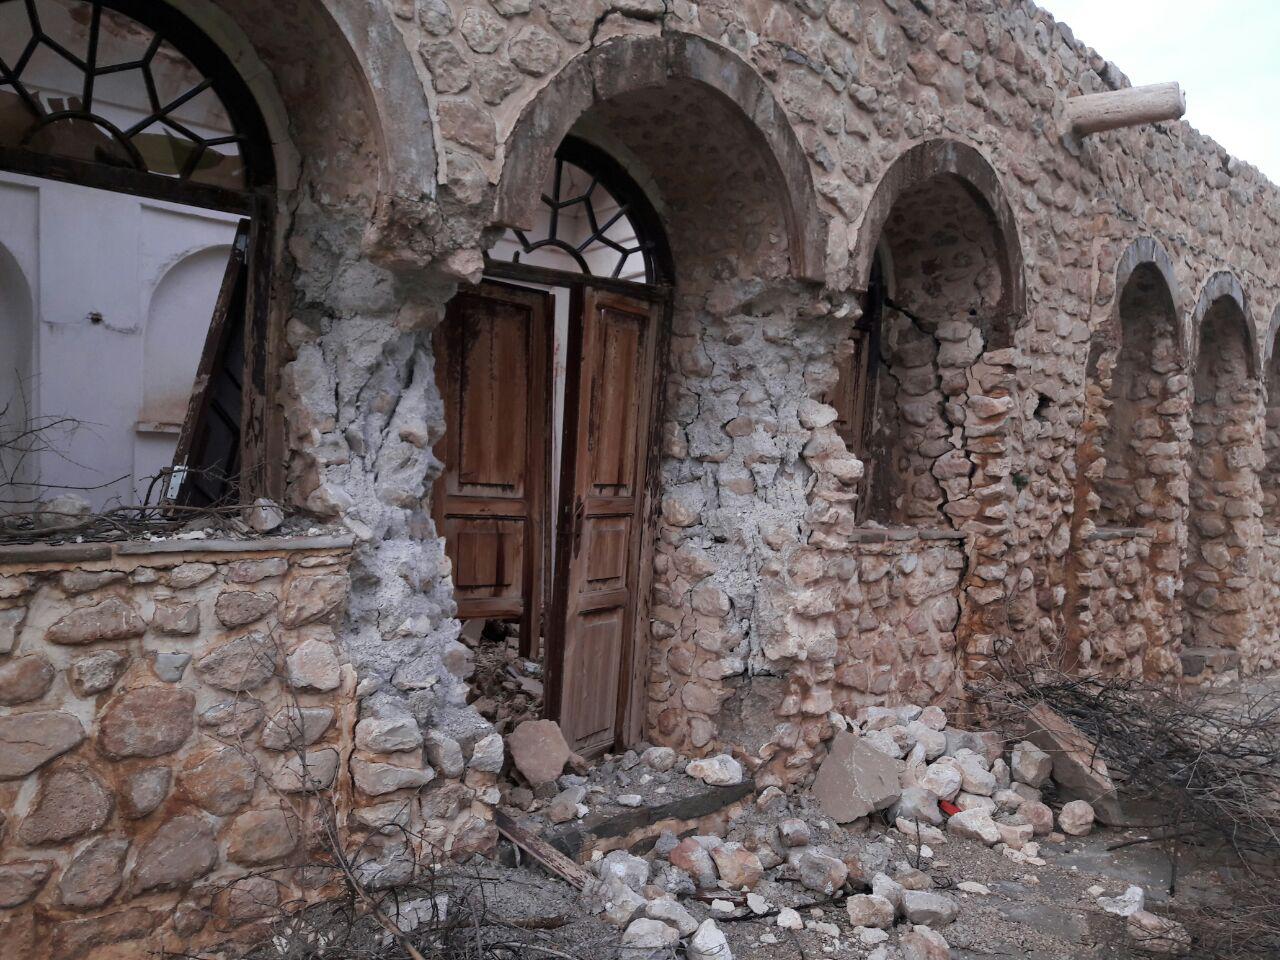 درز مرگ بر دل هزاران سال تاریخ / دیواره کوشک تاریخی نورآباد ایذه فرو ریخت